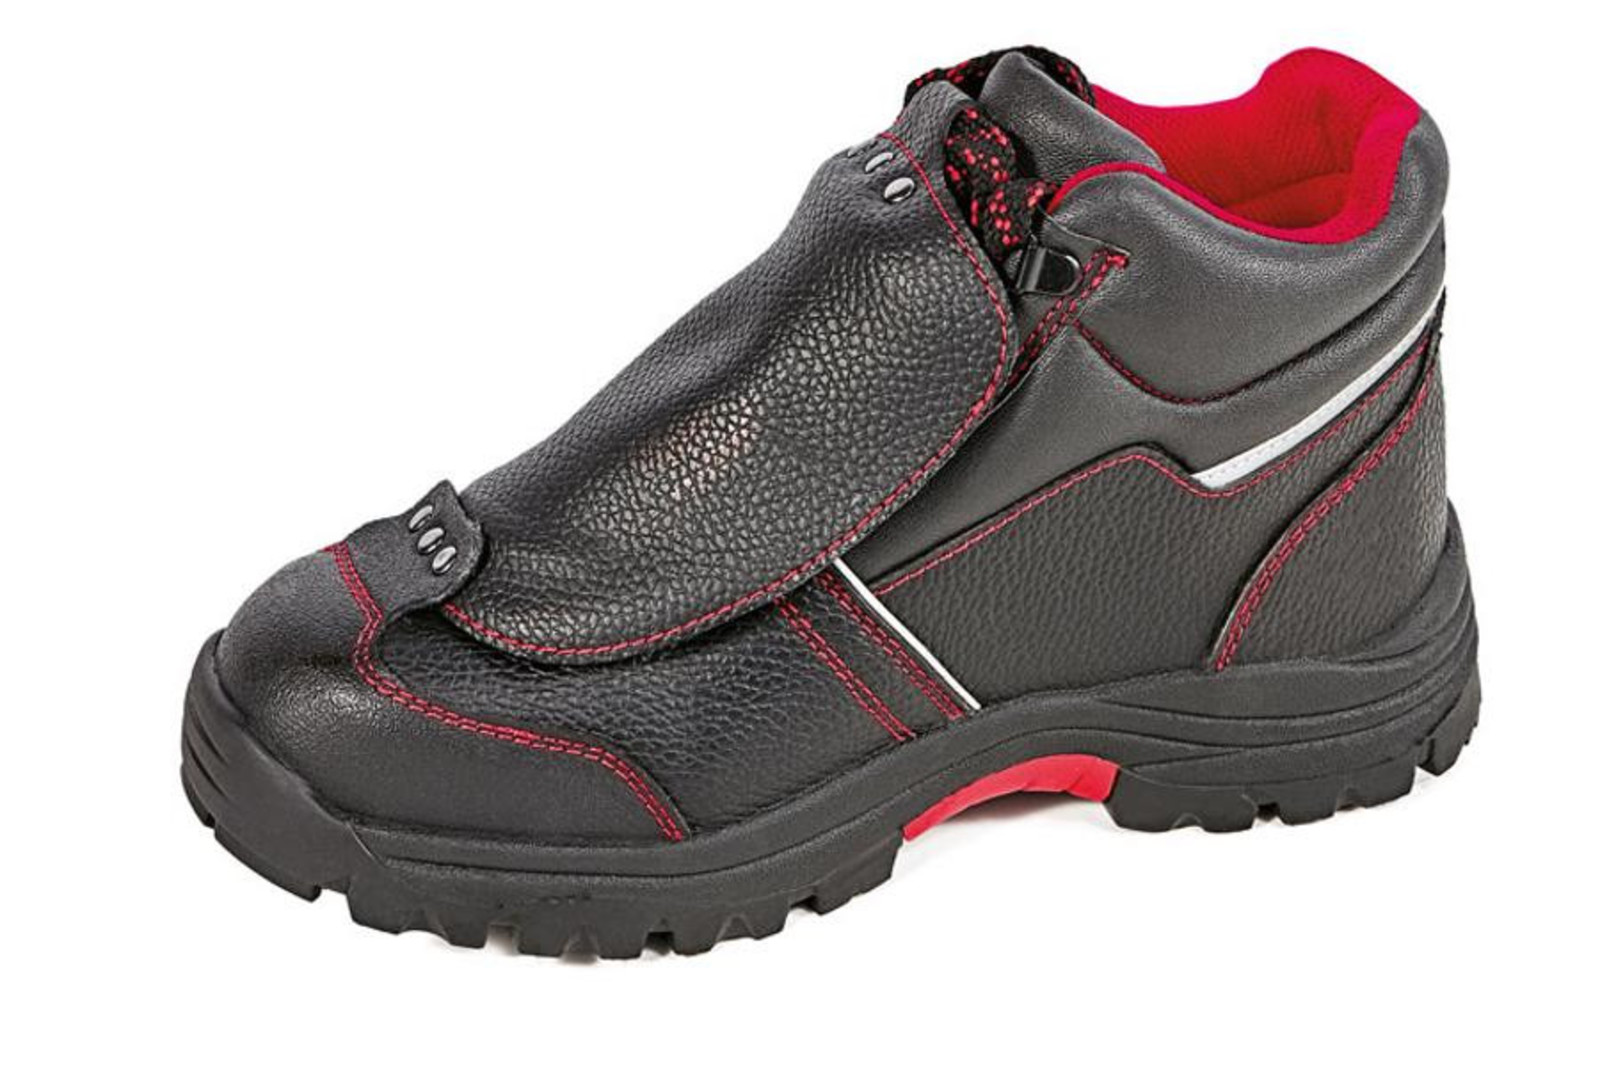 Bezpečnostná členková obuv Cerva Steeler Metatarsal S3 HRO M SRA  - veľkosť: 45, farba: čierna